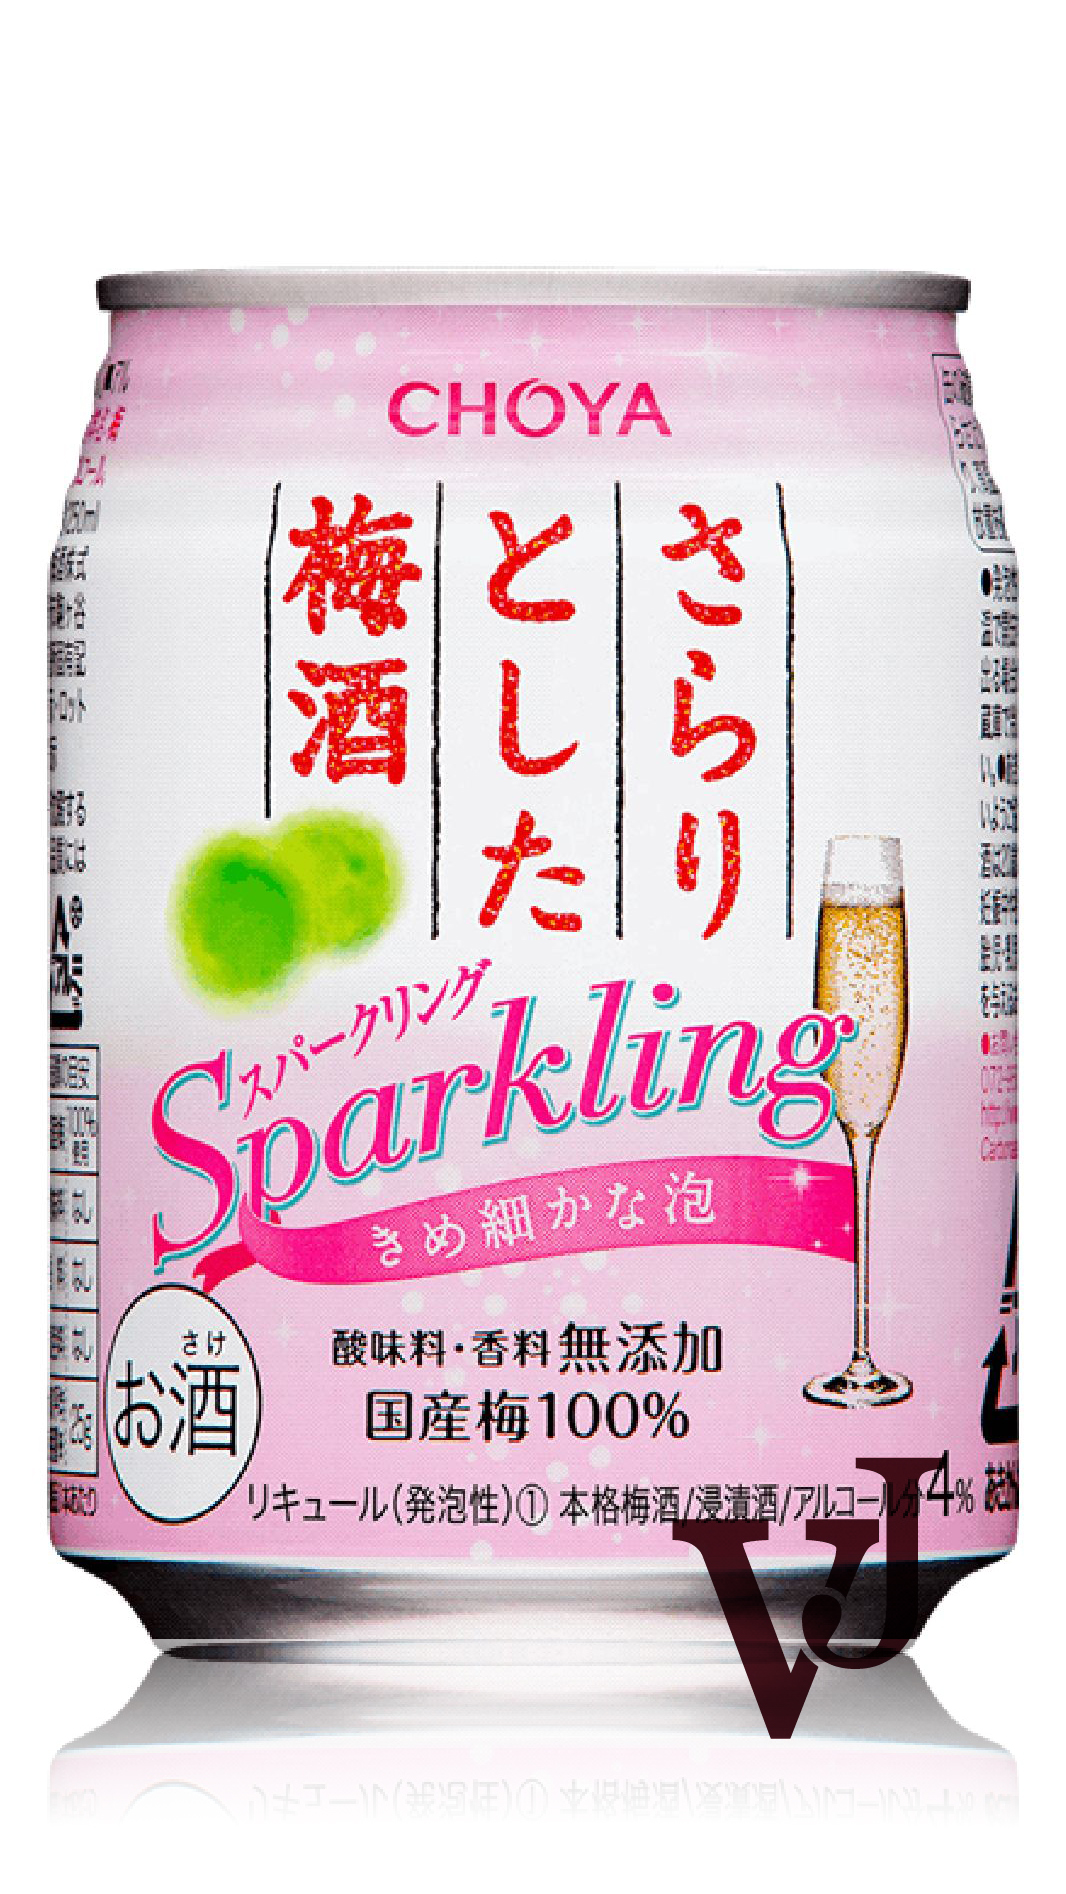 Övrigt Vin - Choya Umeshu Sparkling Plum Wine artikel nummer 5666714 från producenten Choya Umeshu från Japan.